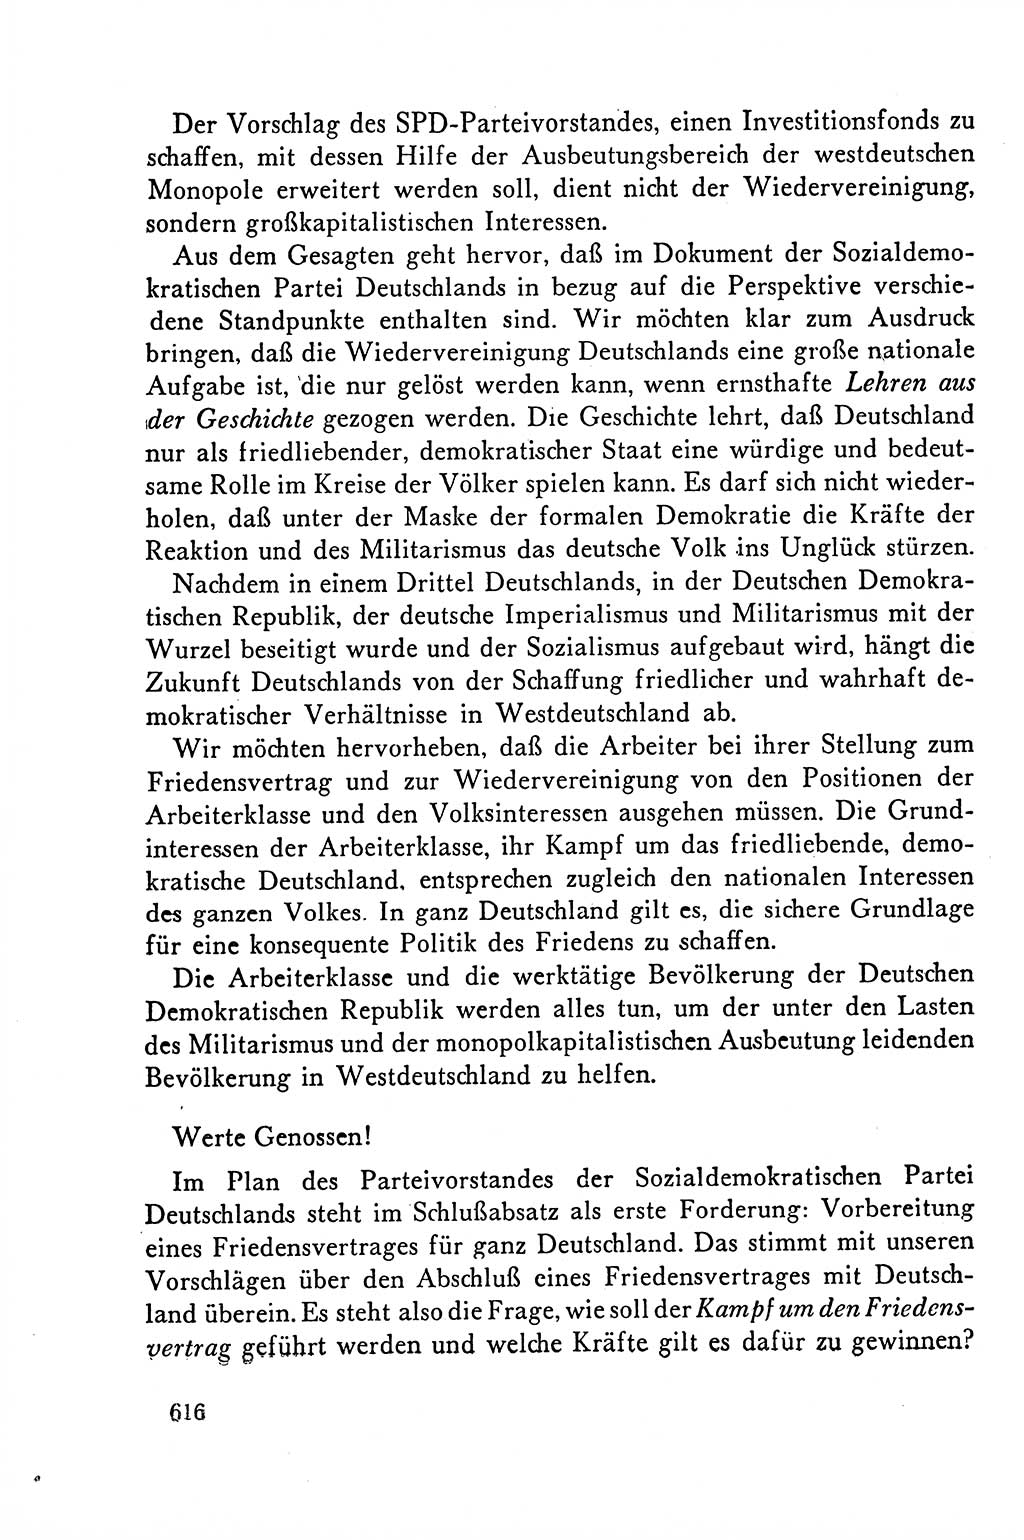 Dokumente der Sozialistischen Einheitspartei Deutschlands (SED) [Deutsche Demokratische Republik (DDR)] 1958-1959, Seite 616 (Dok. SED DDR 1958-1959, S. 616)